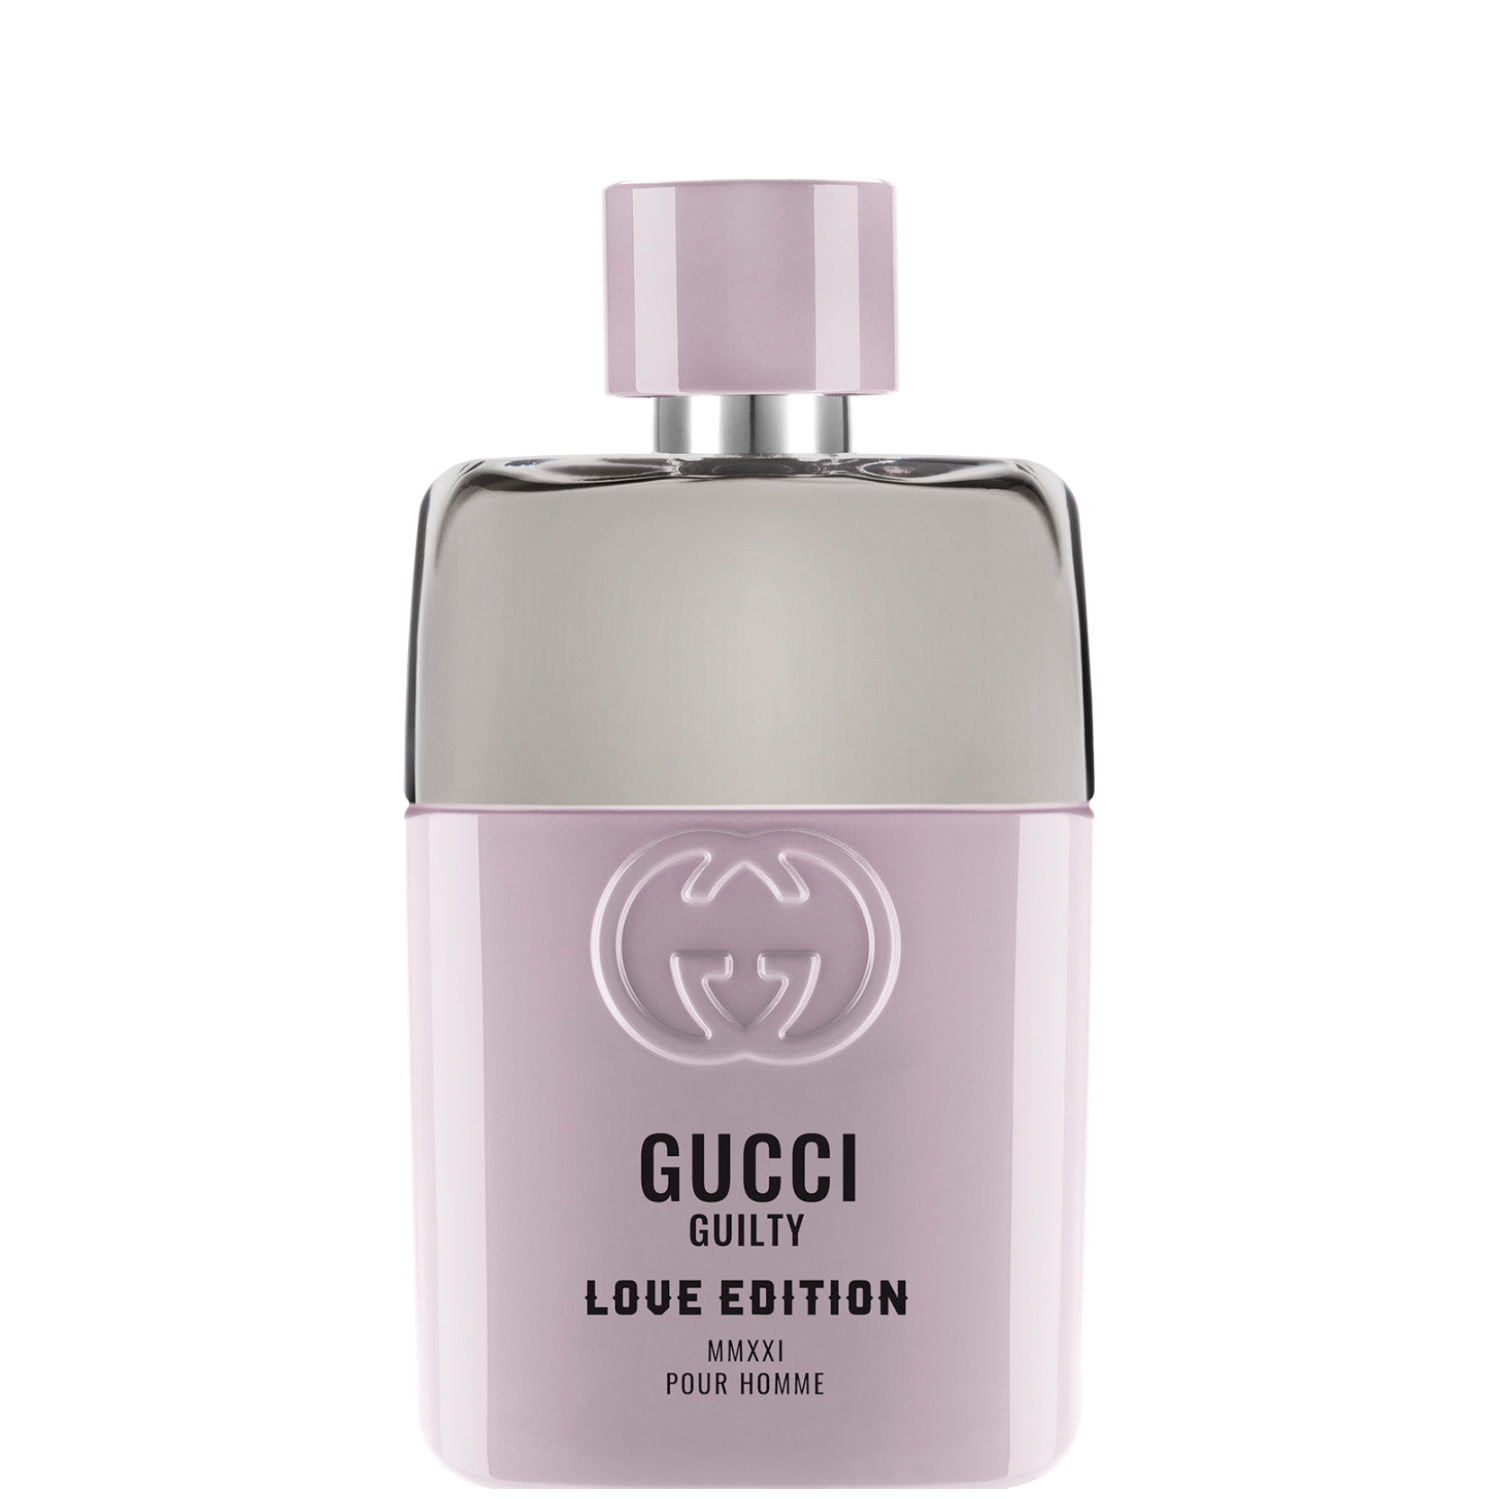 Gucci Guilty Pour Homme Love Edition MMXXI Eau de Toilette 50ml